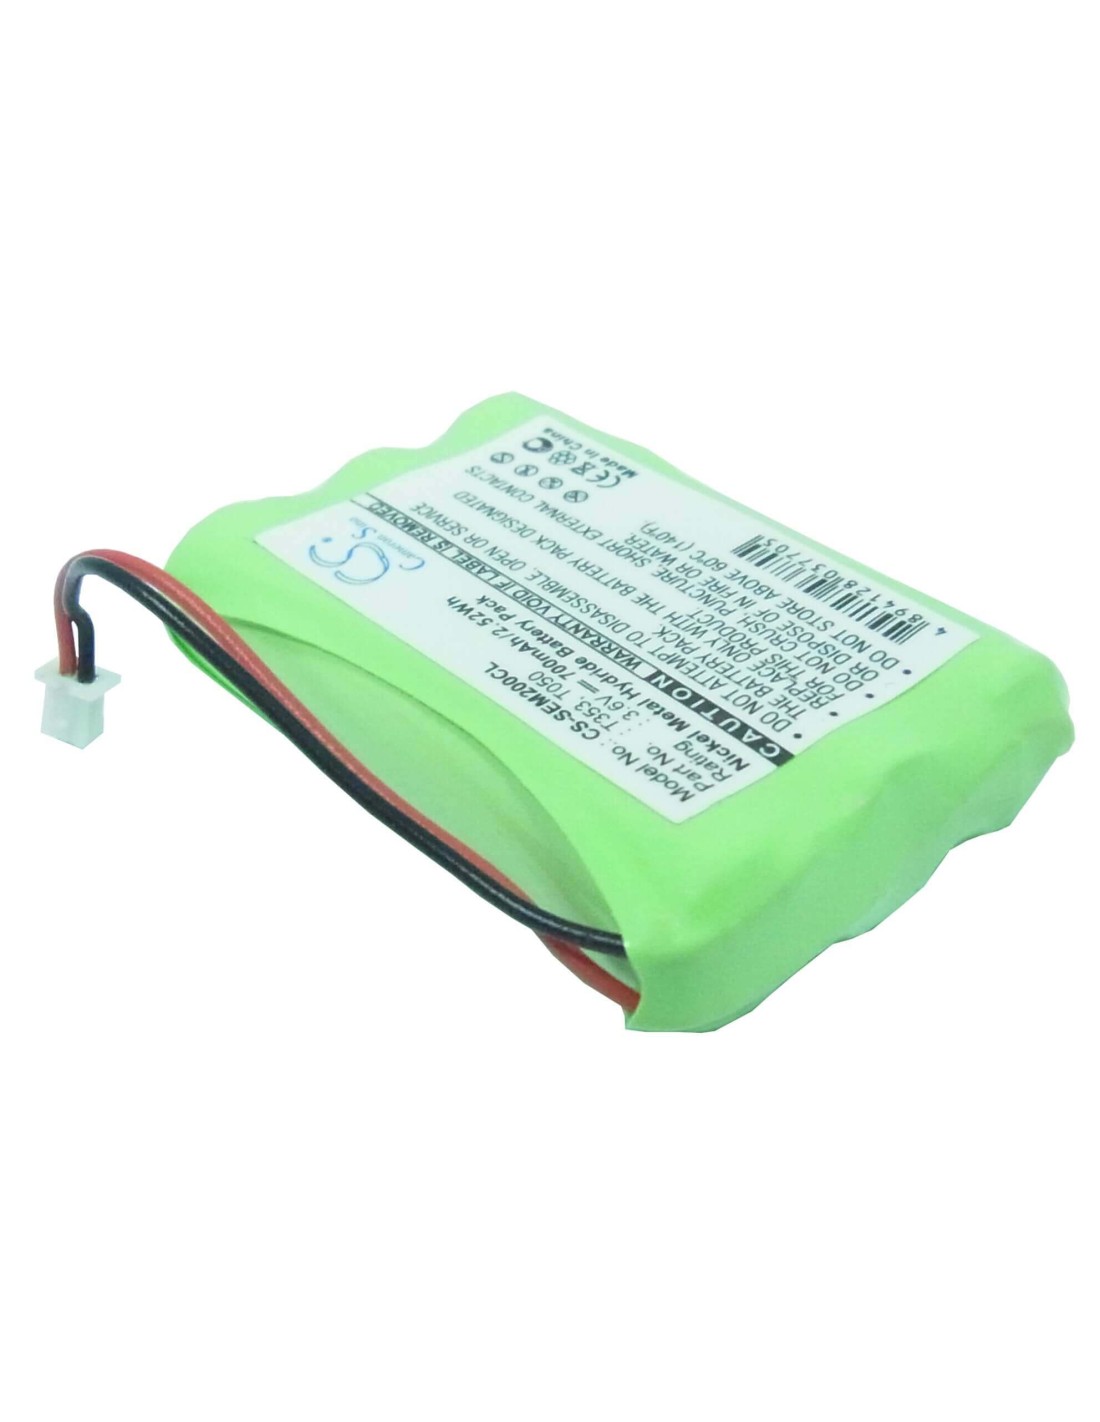 Battery for Nortel, Mc901 3.6V, 700mAh - 2.52Wh